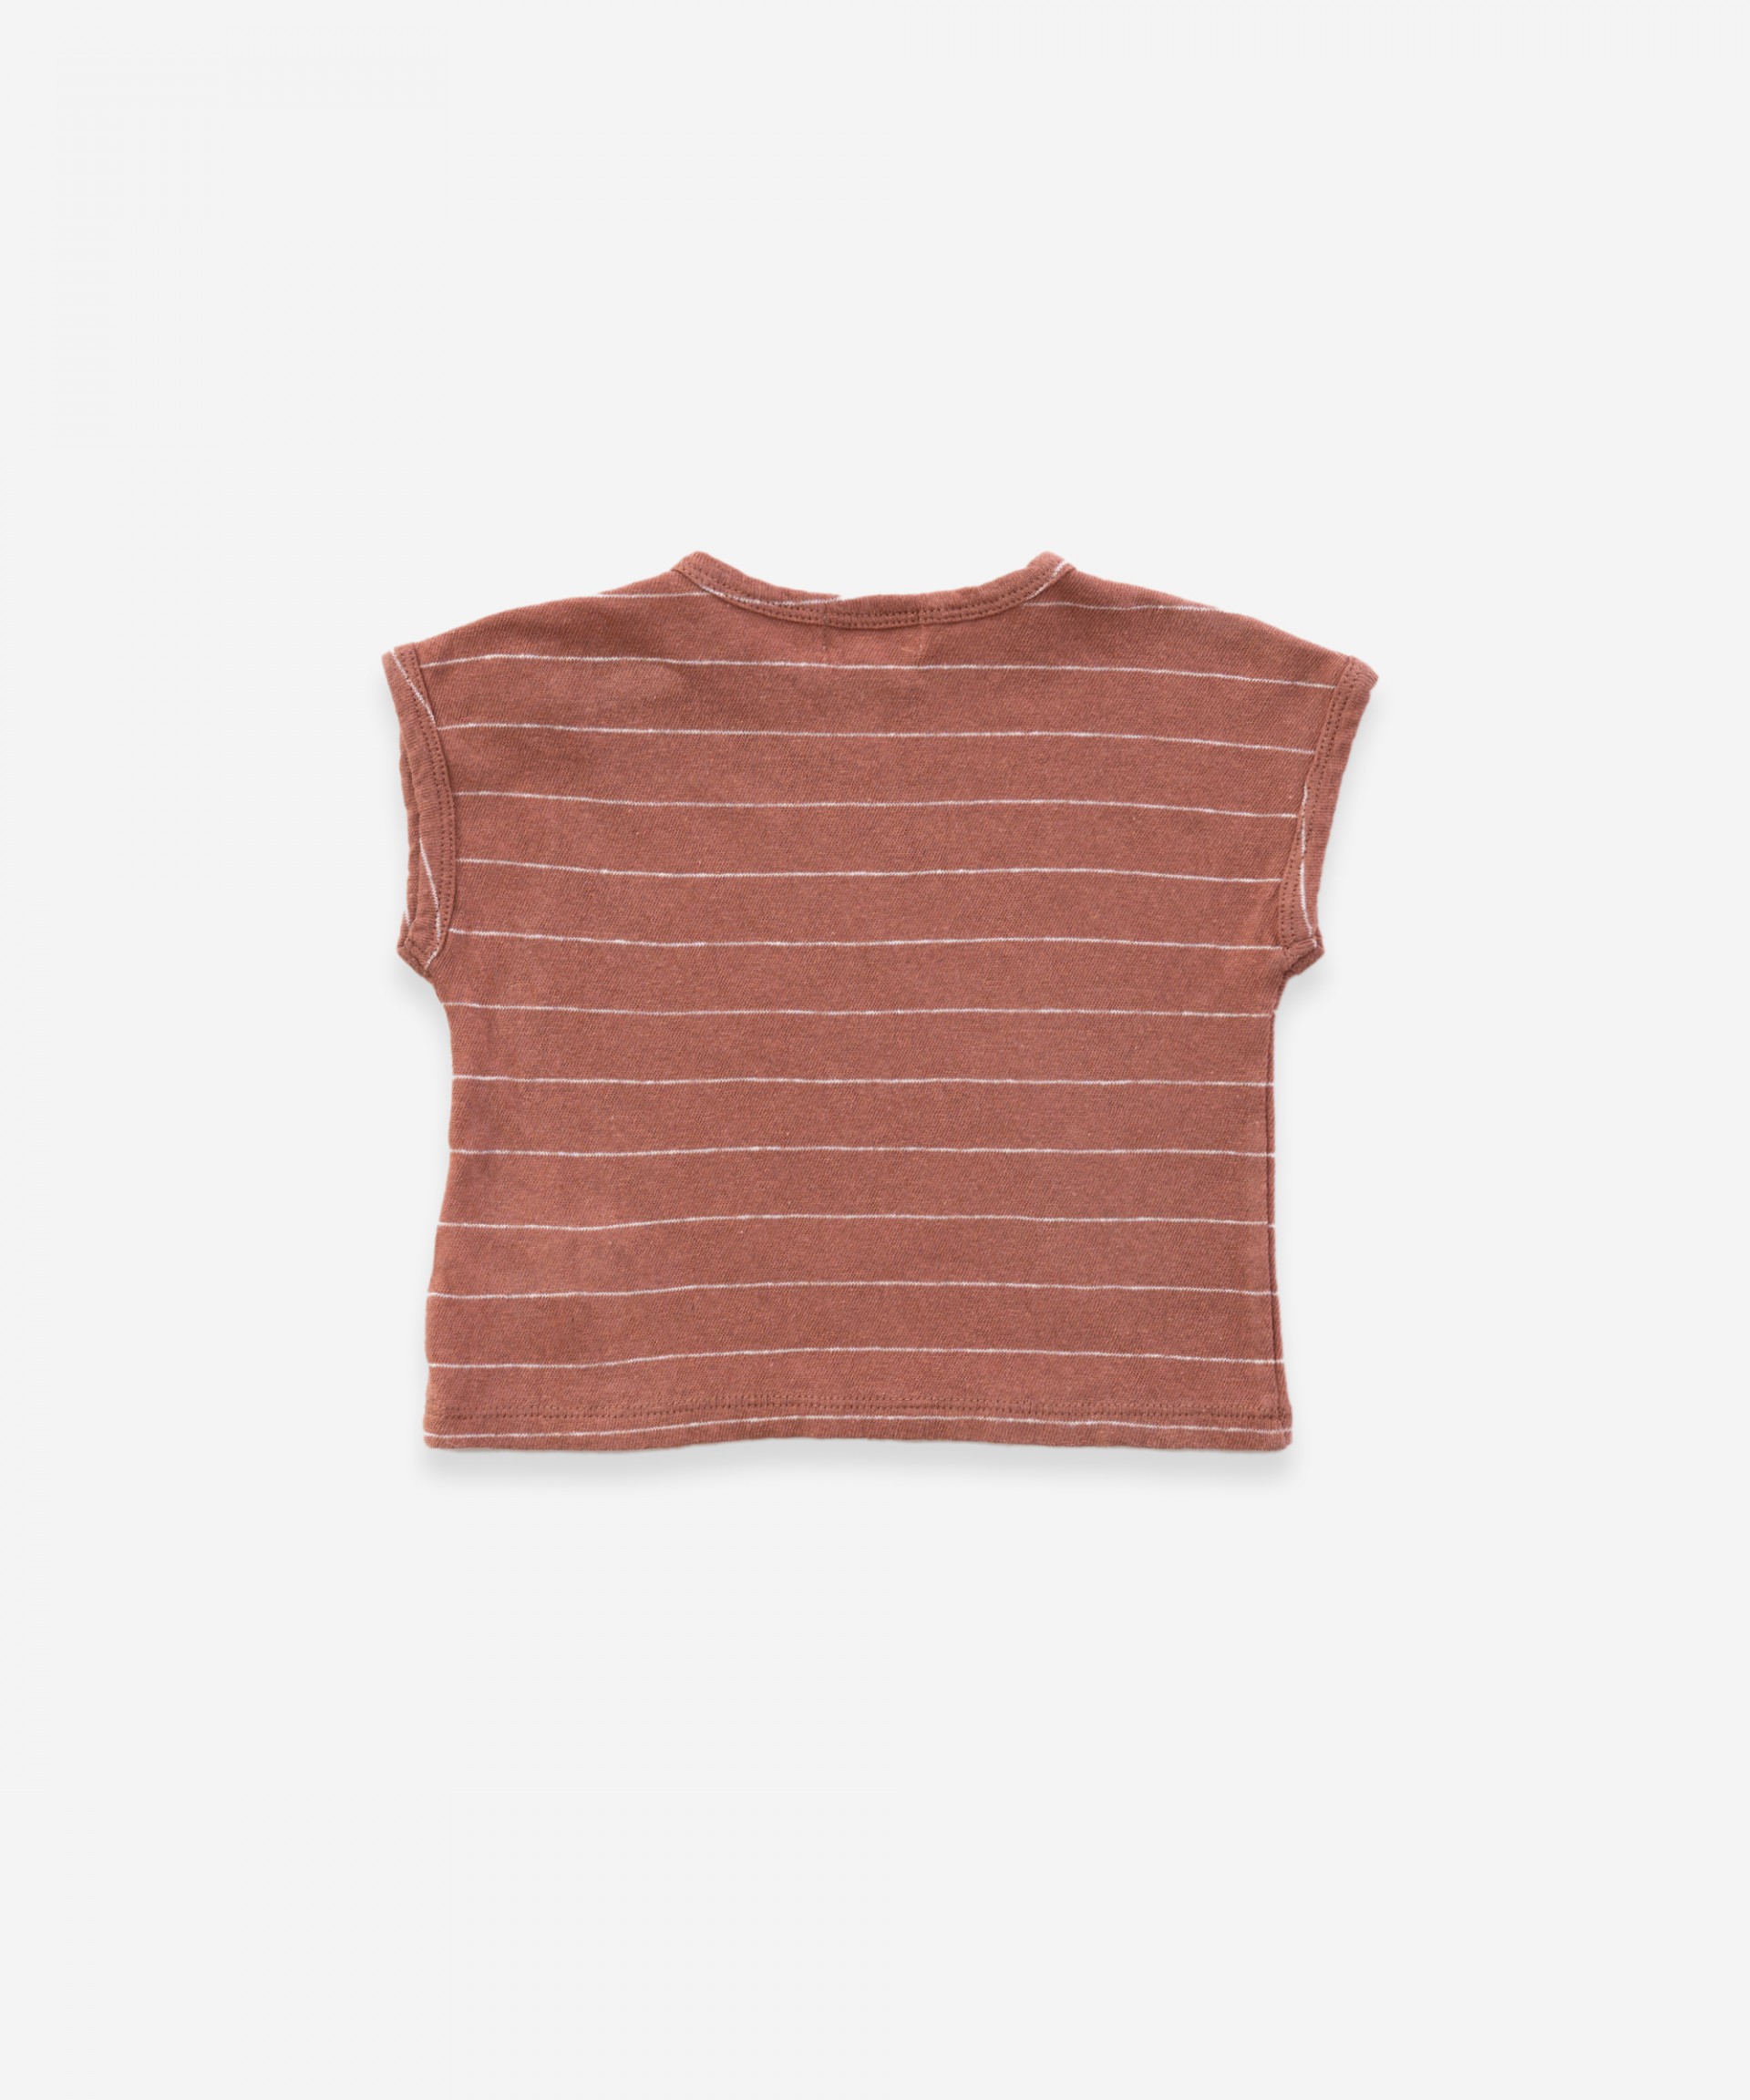 T-shirt senza maniche in cotone-lino| Weaving